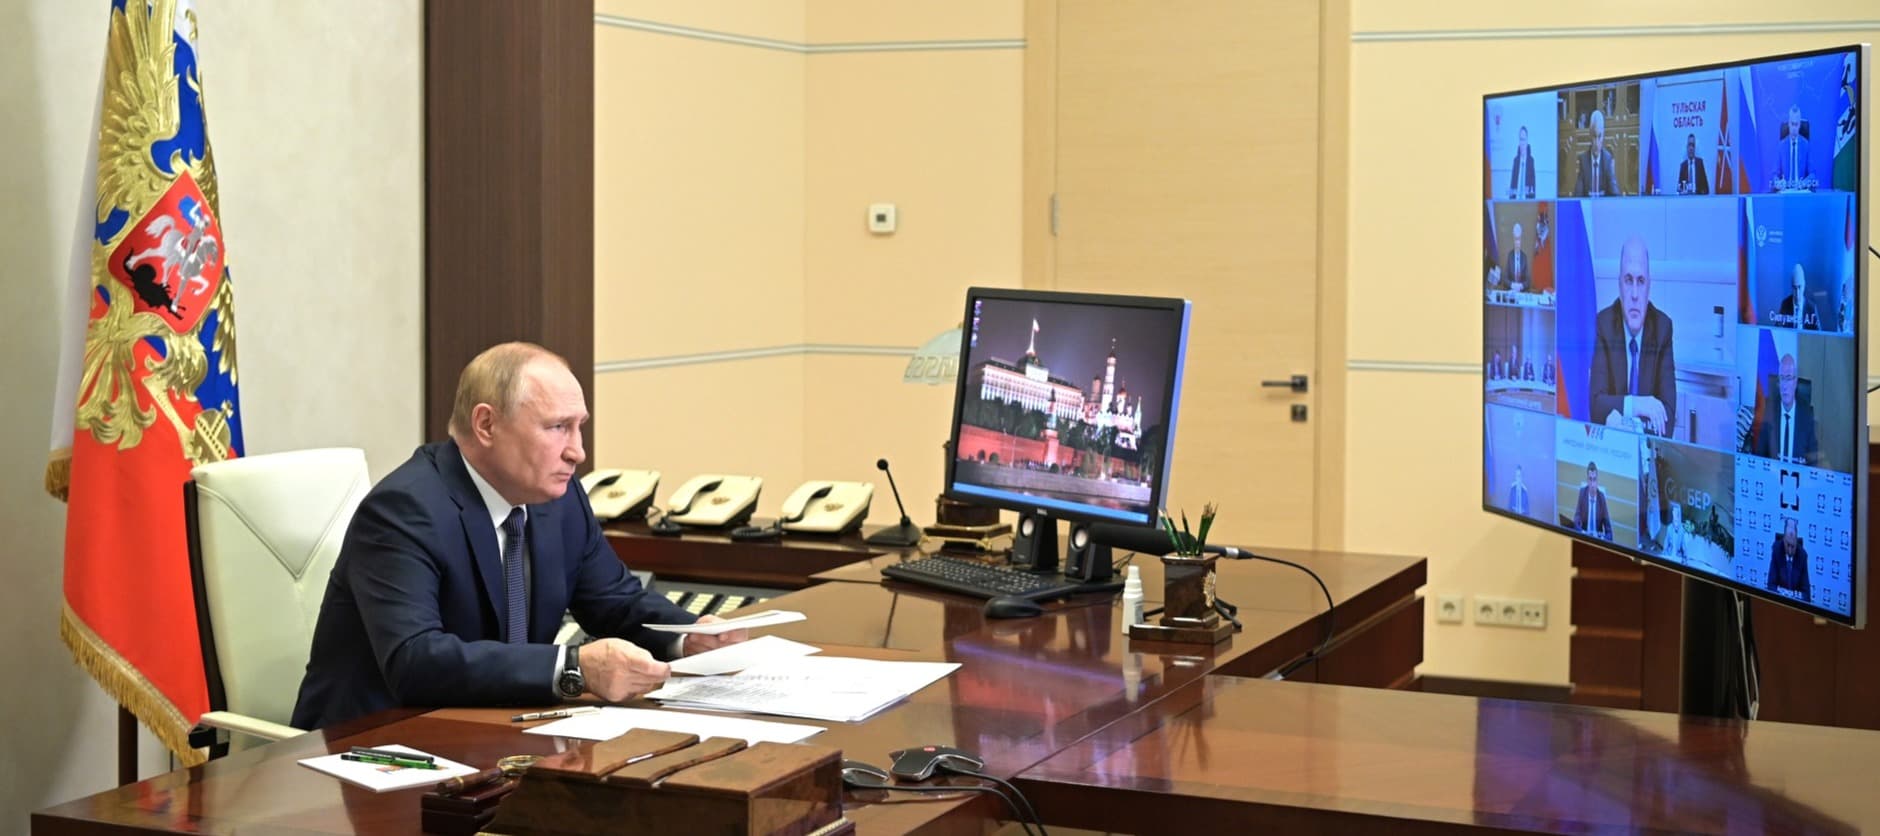 Фото новости: "Путин призвал поддержать технологические компании российским капиталом"